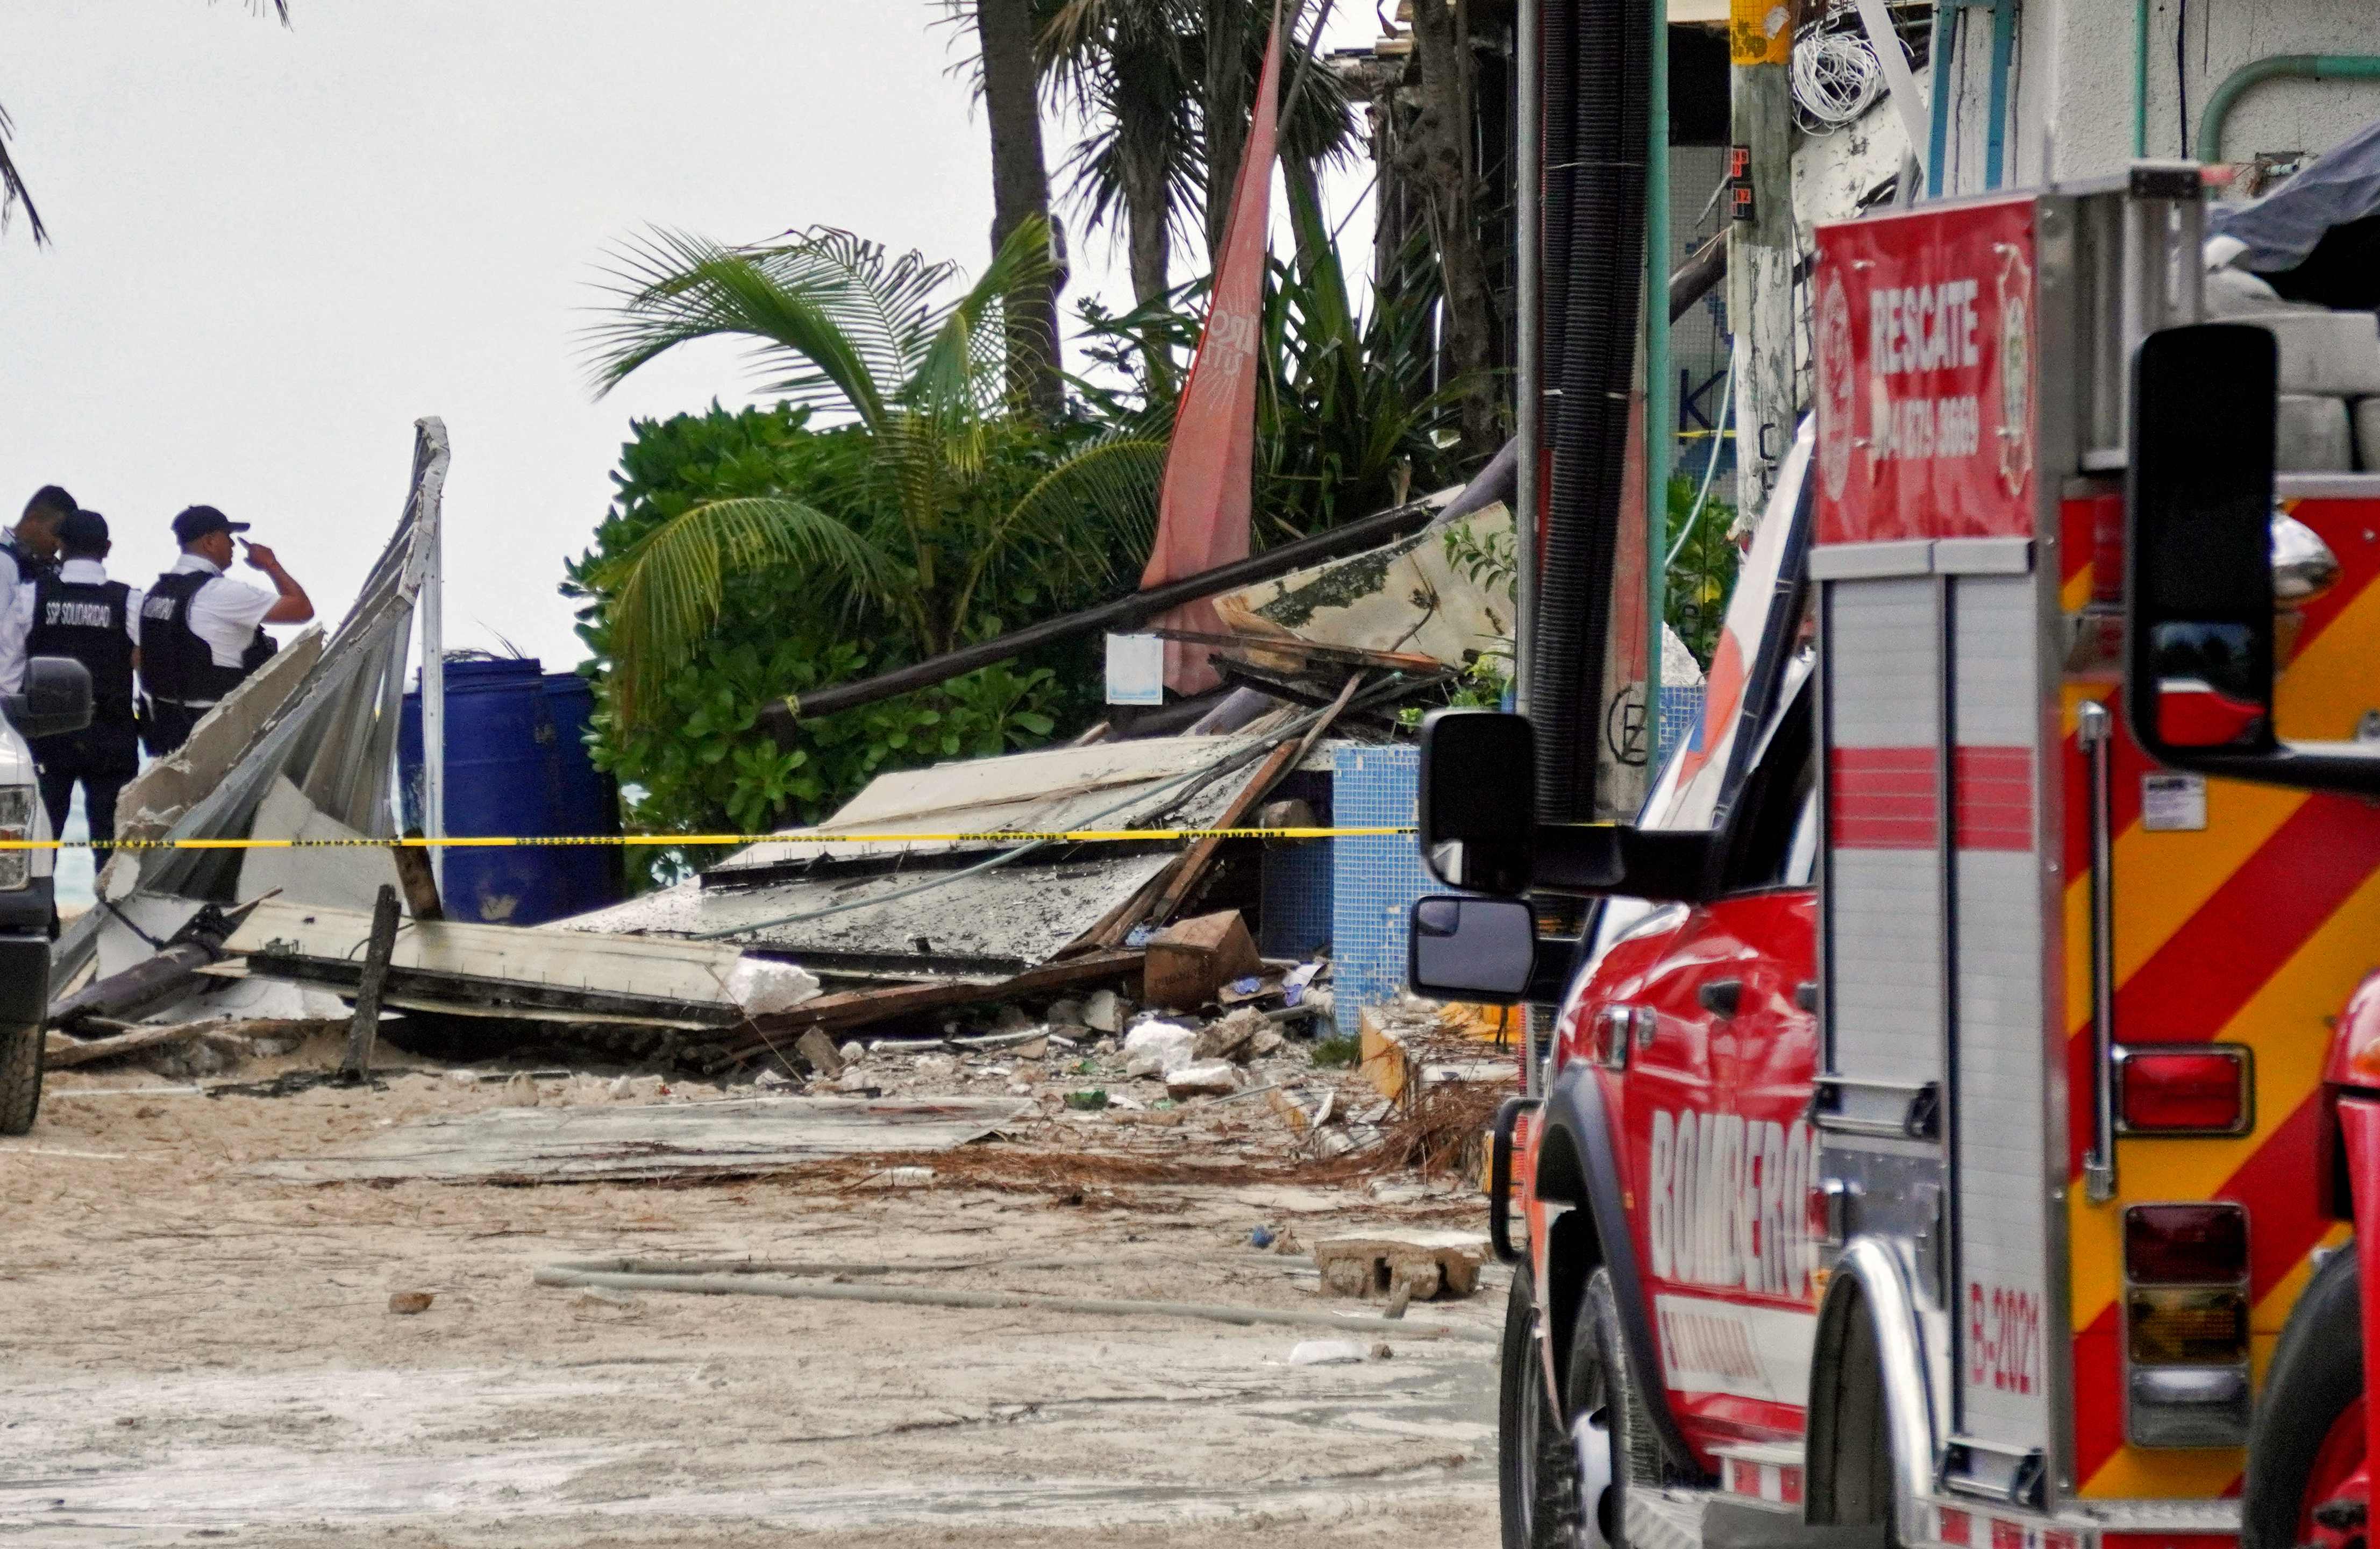 Vista de los escombros tras la explosión en un restaurante en la zona turística de Playa Mamitas, en Playa del Carmen, estado de Quintana Roo, México, el 14 de marzo de 2022